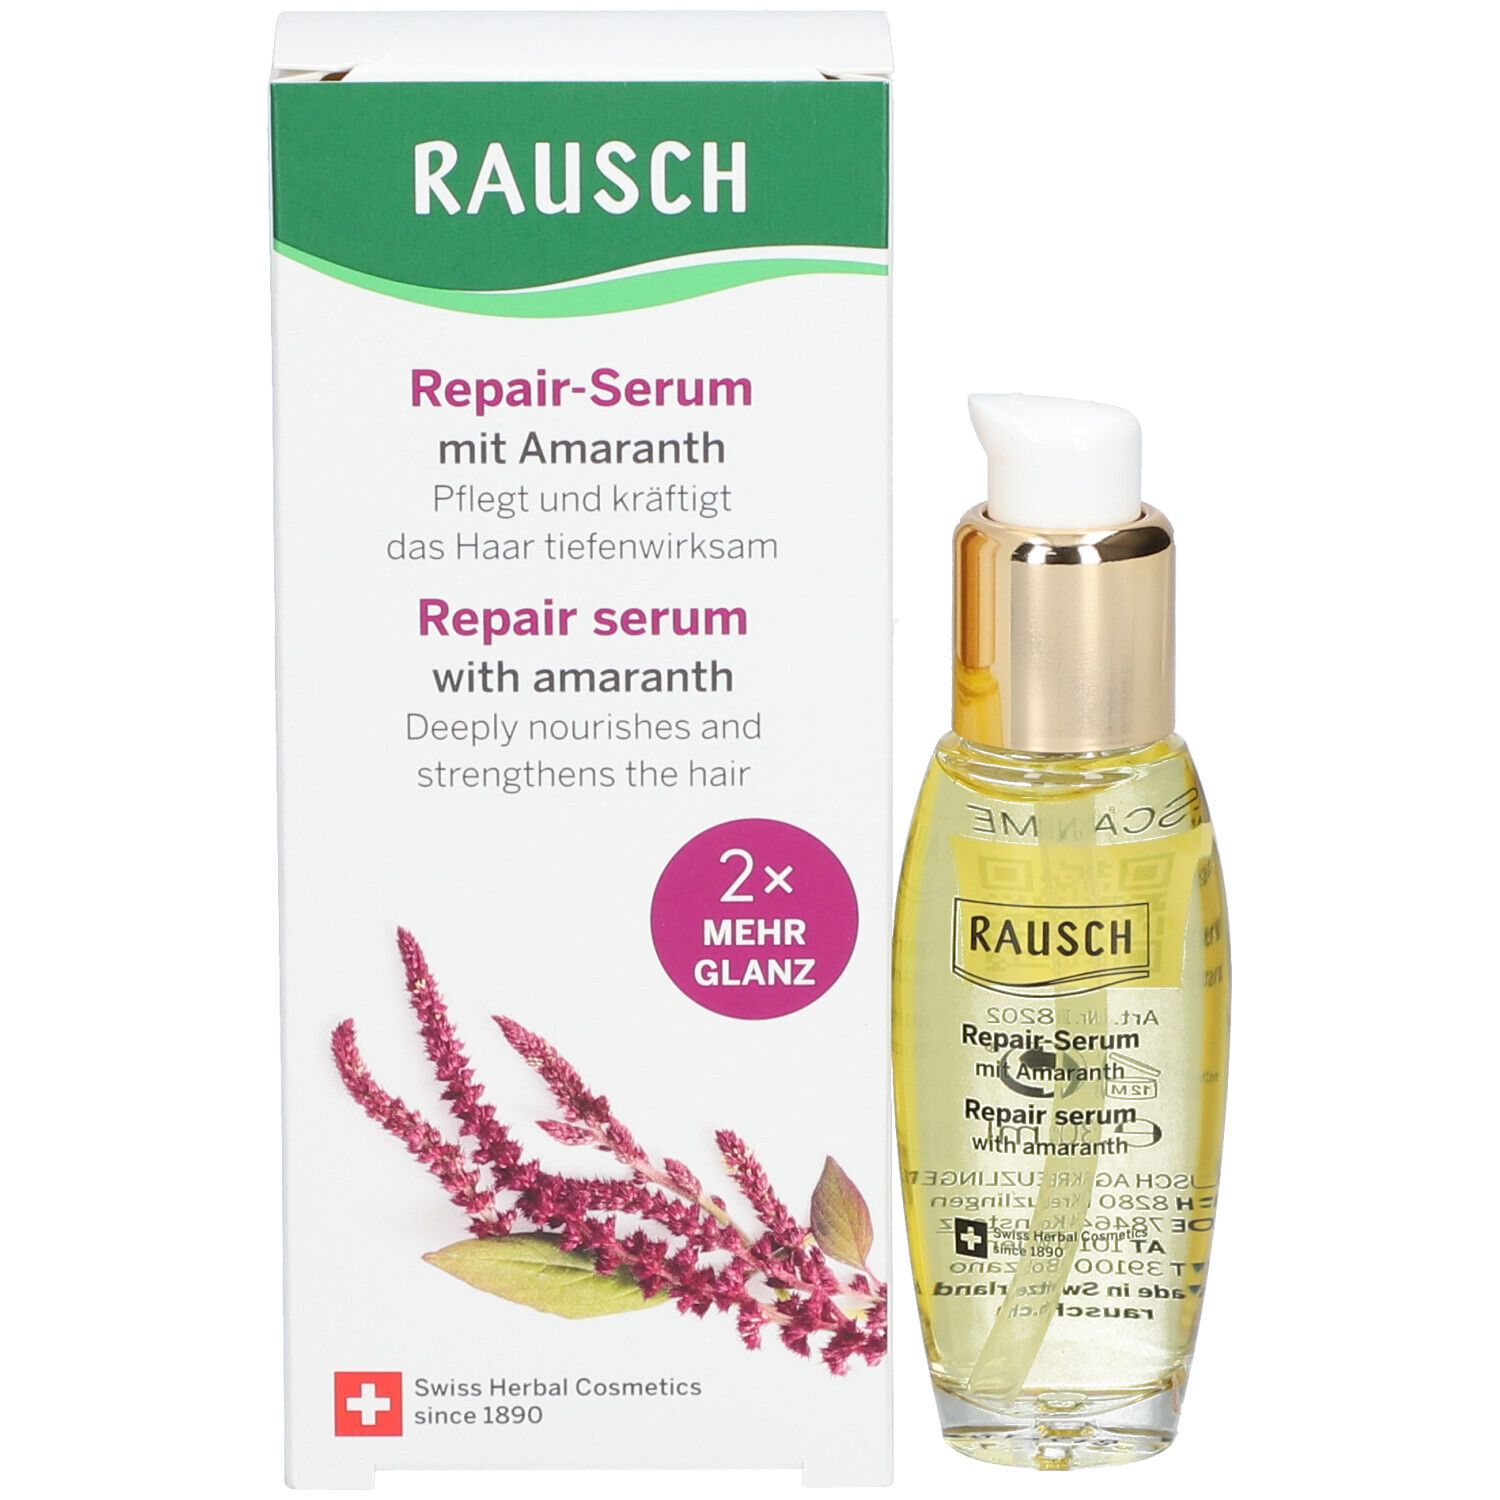 Rausch Repair-Serum Amaranth